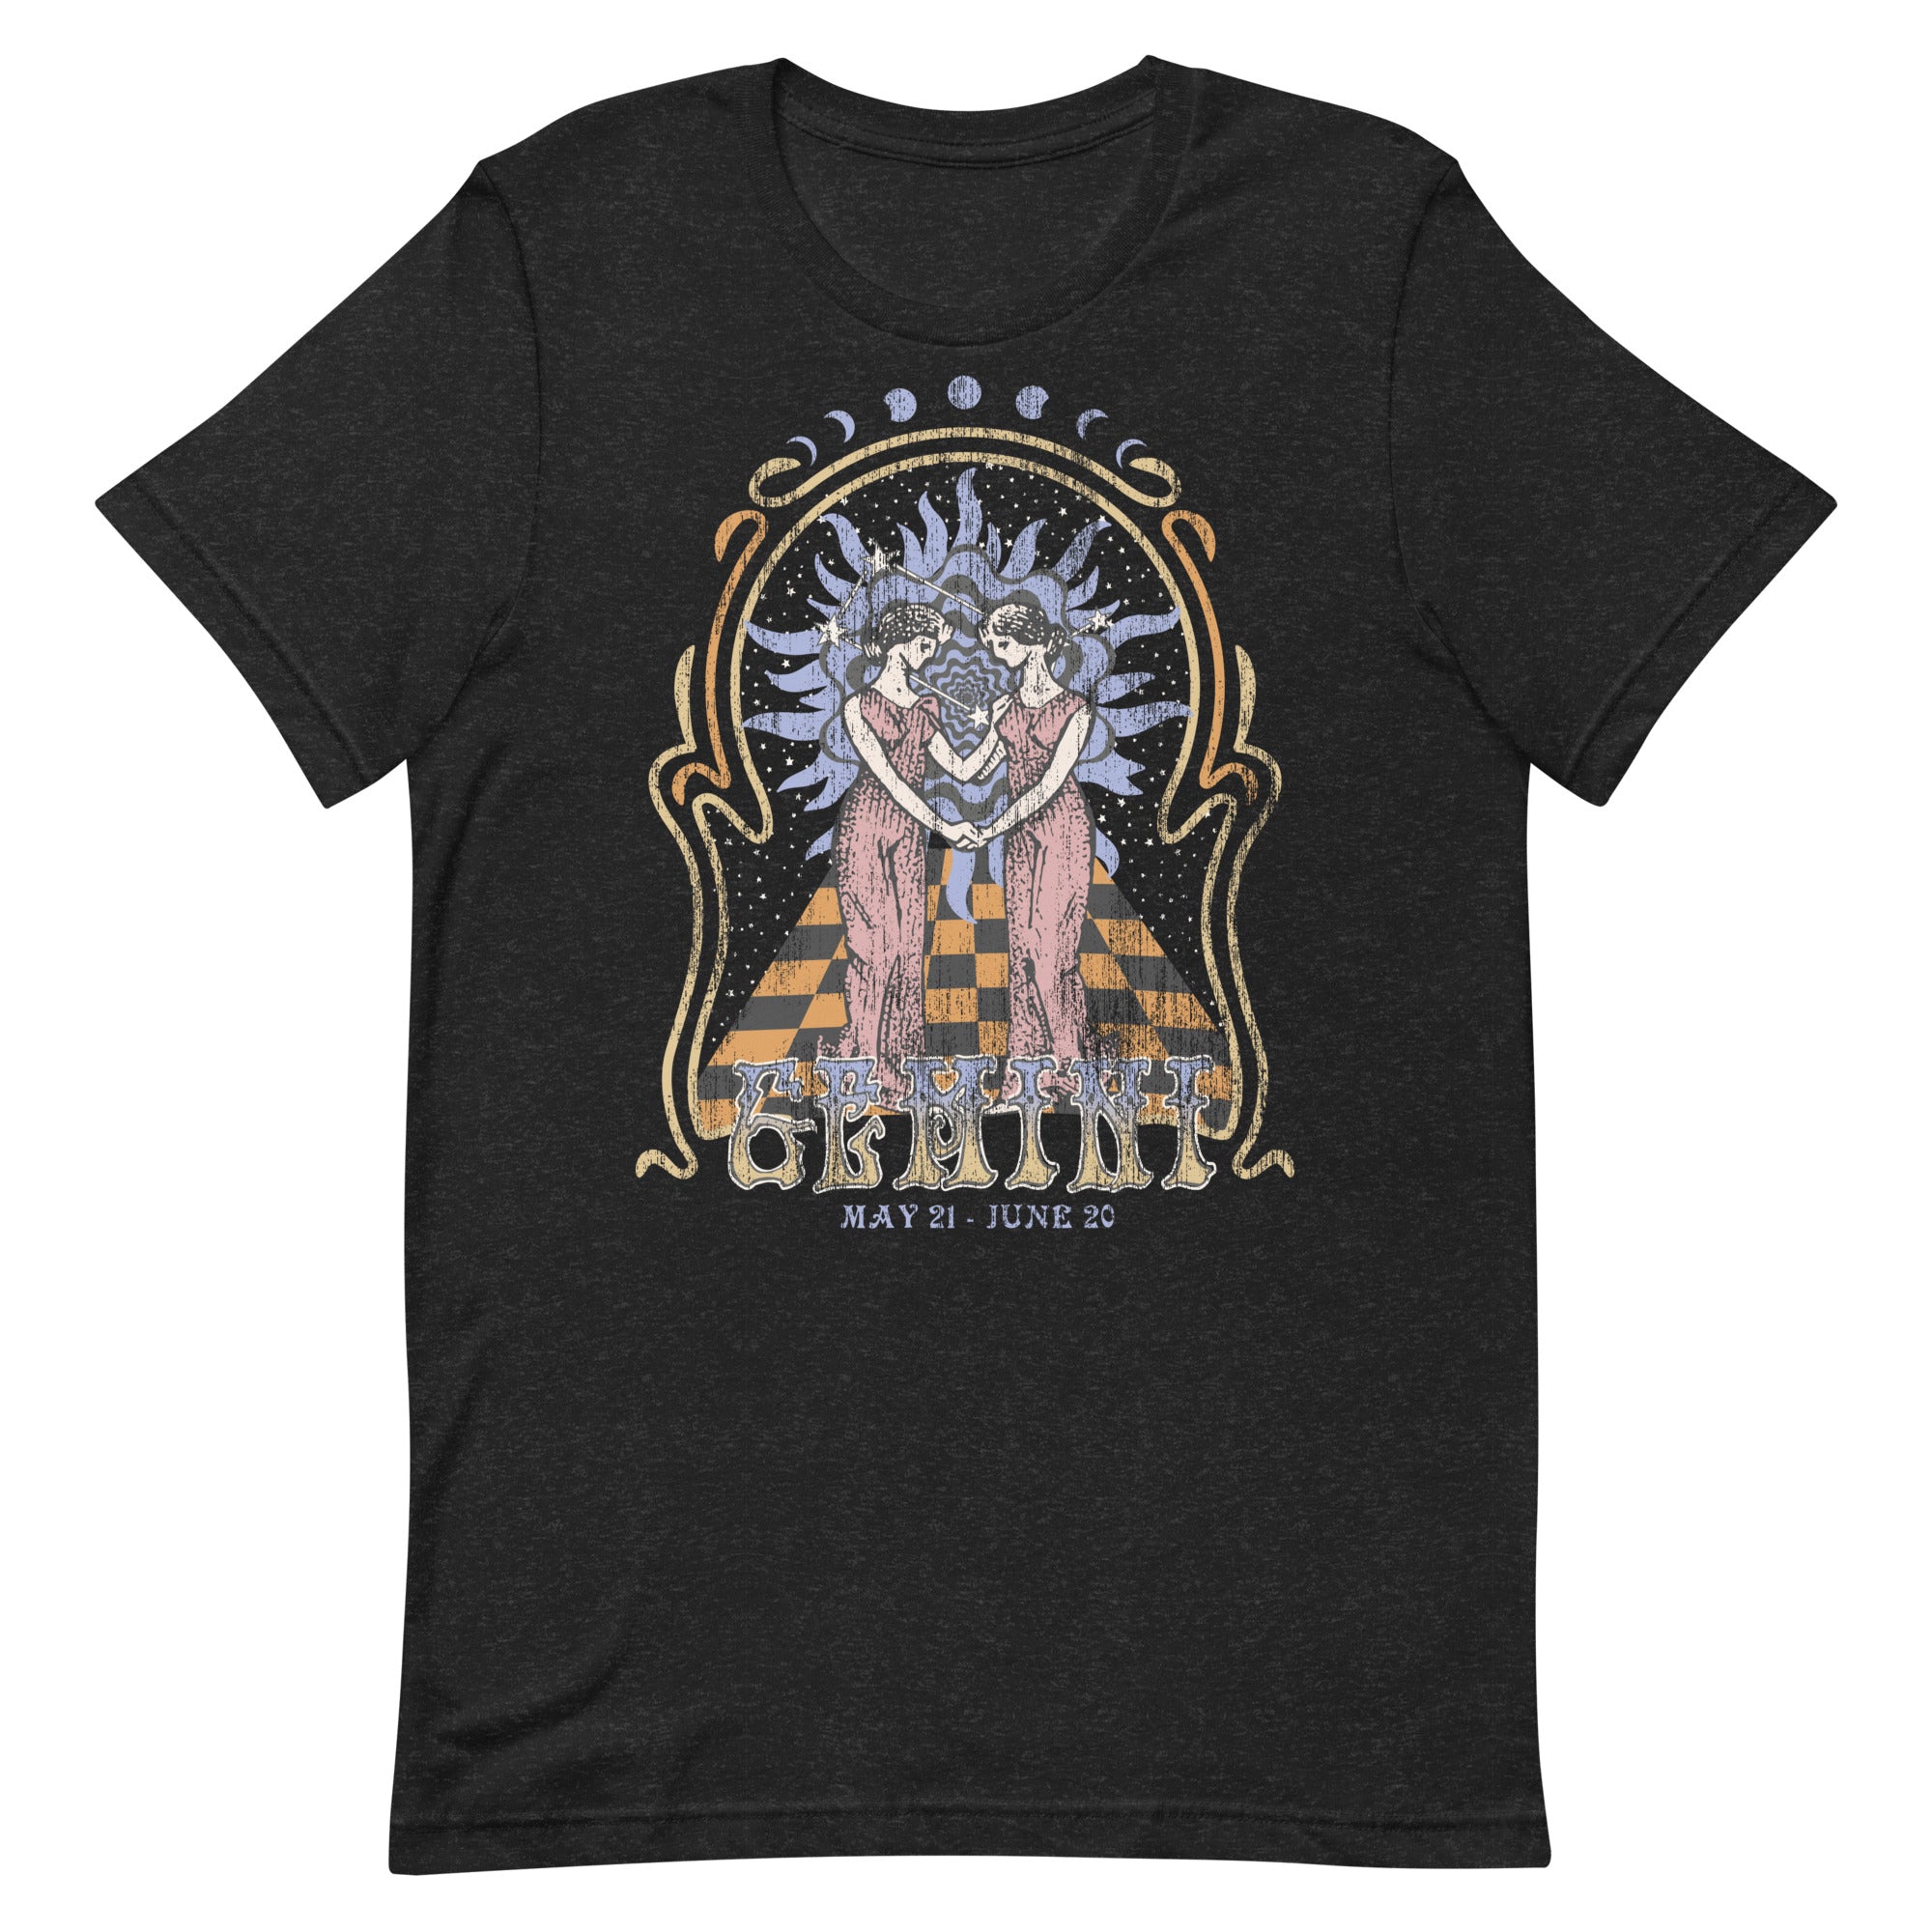 Gemini Band T-Shirt Inspired Graphic Tee